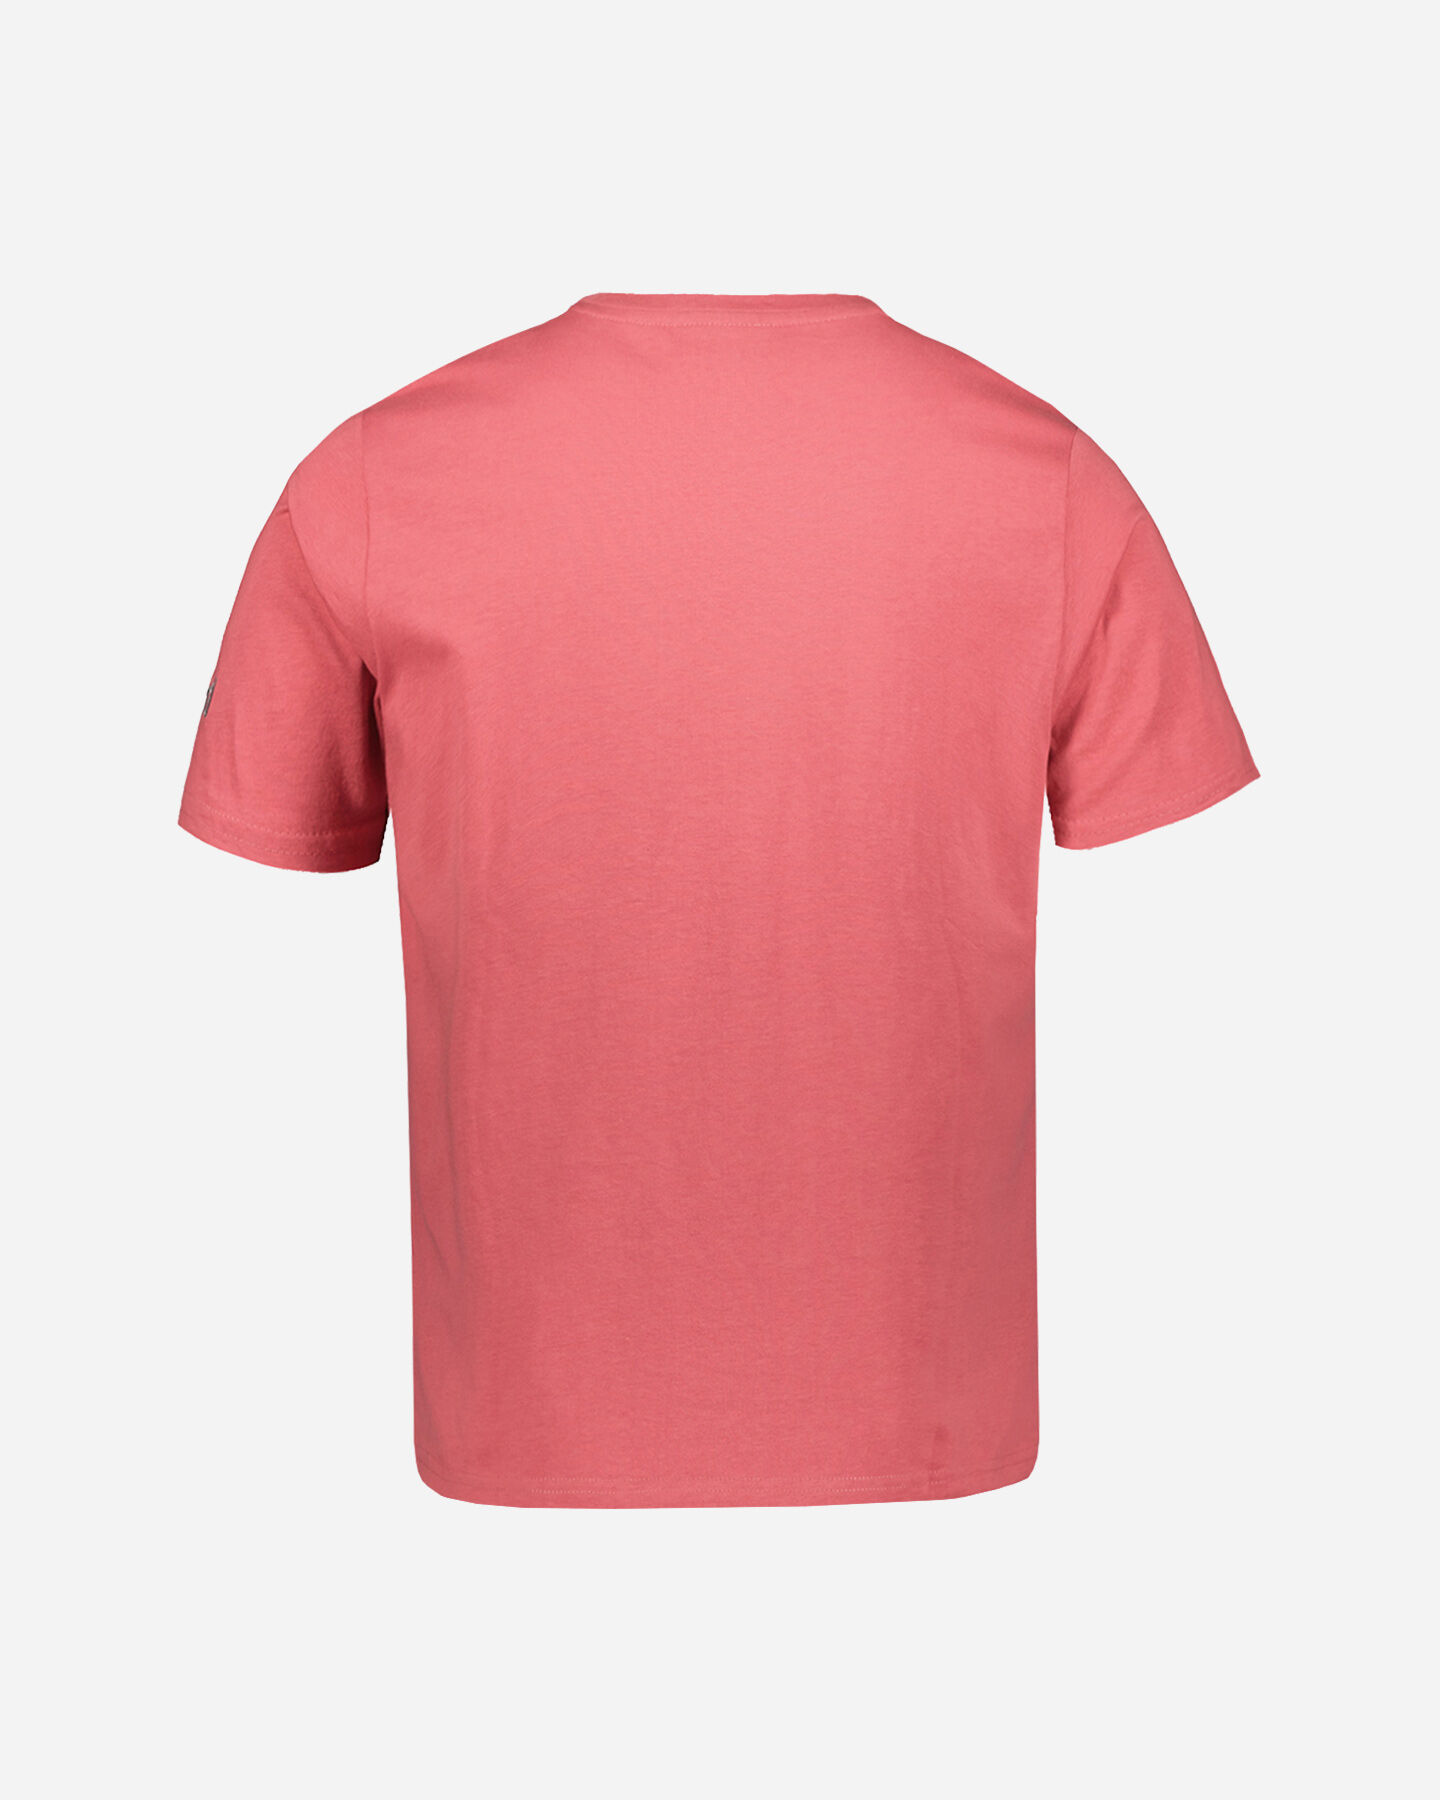  T-Shirt ADMIRAL JERSEY BIG LOGO M S4136475|EI104|S scatto 1